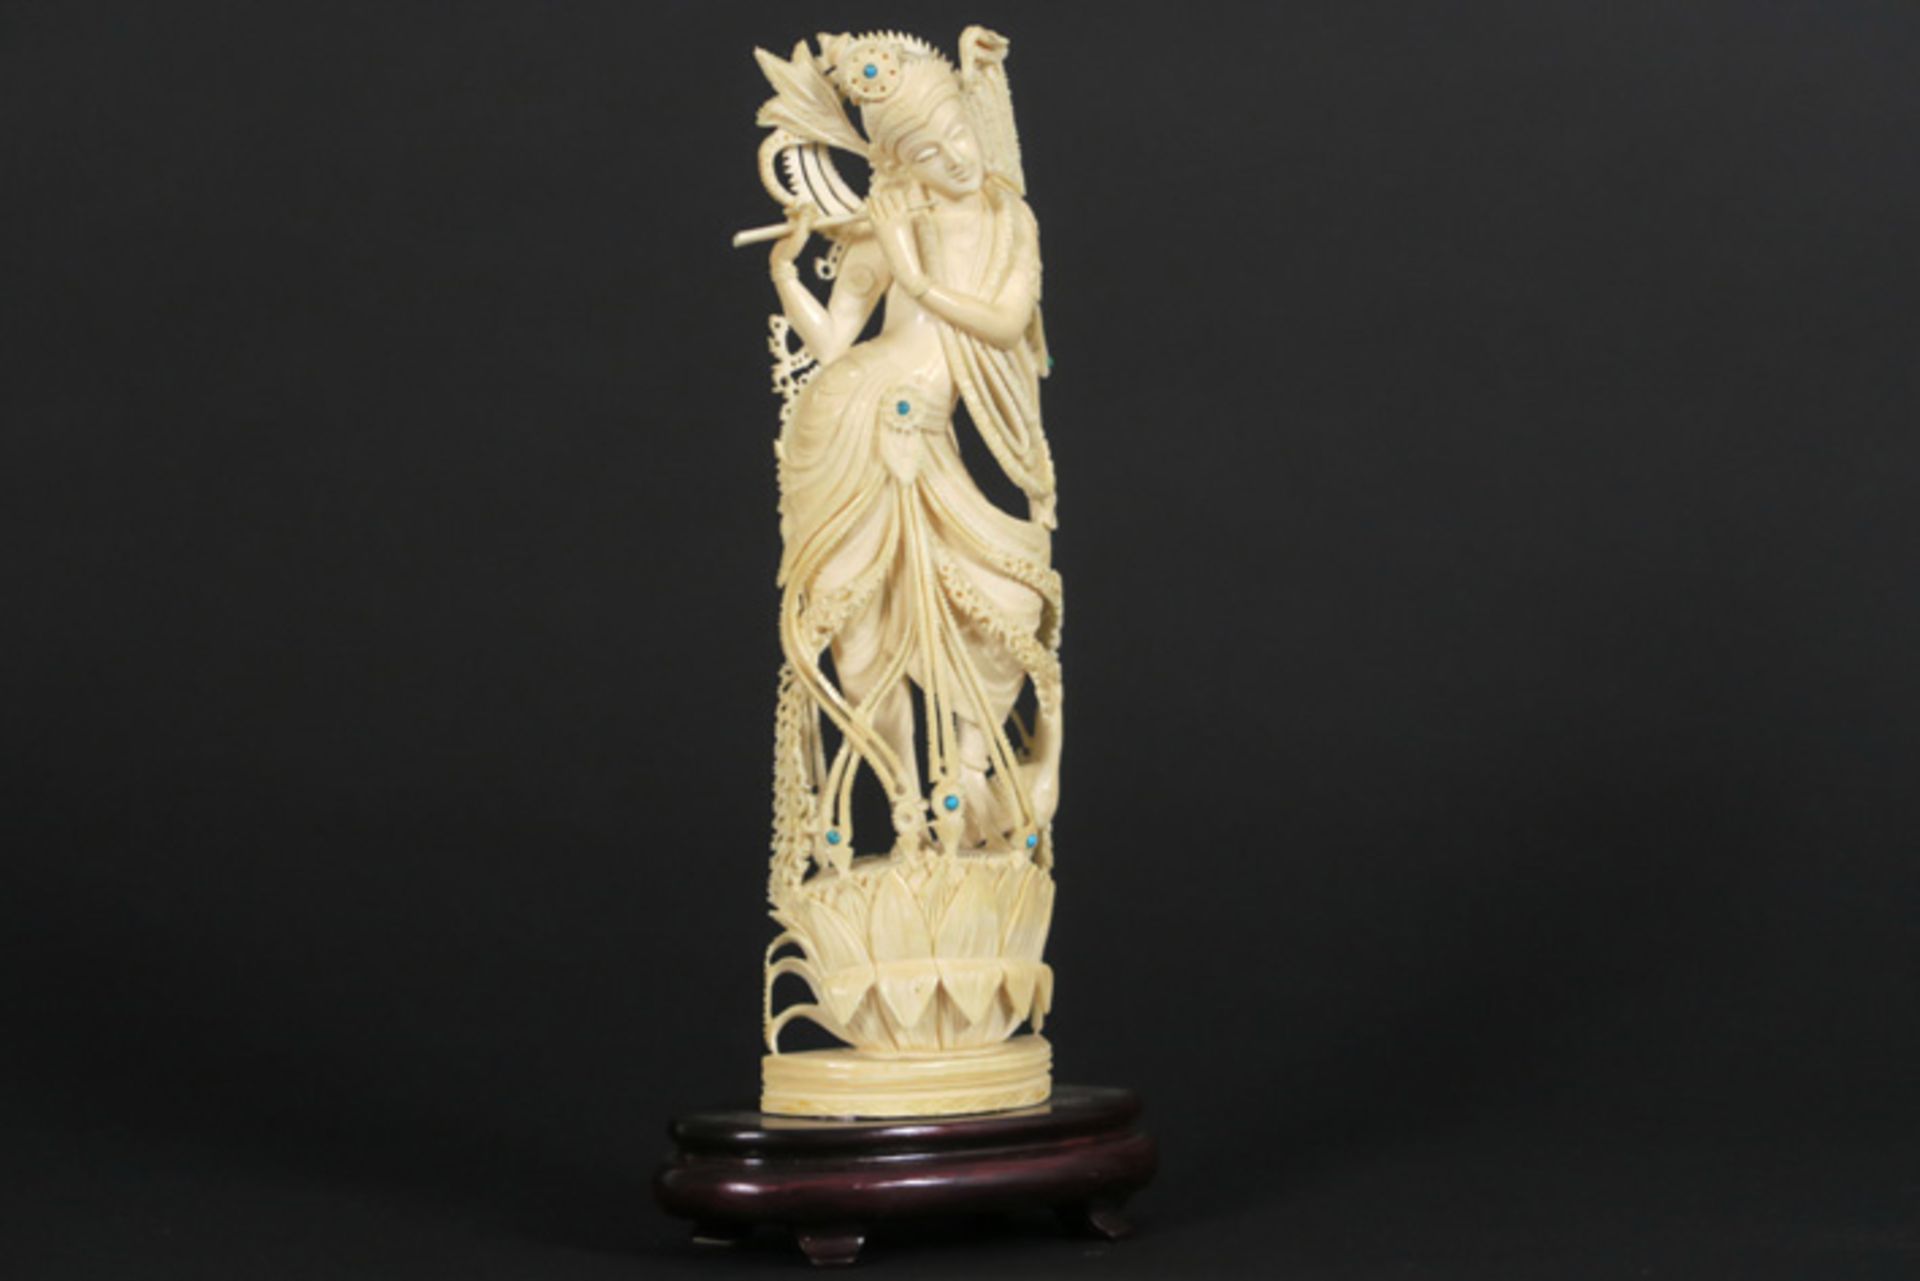 Oude Indische sculptuur in ivoor met ingelegde kralen van turkoois : "Krishna" - [...] - Bild 2 aus 4